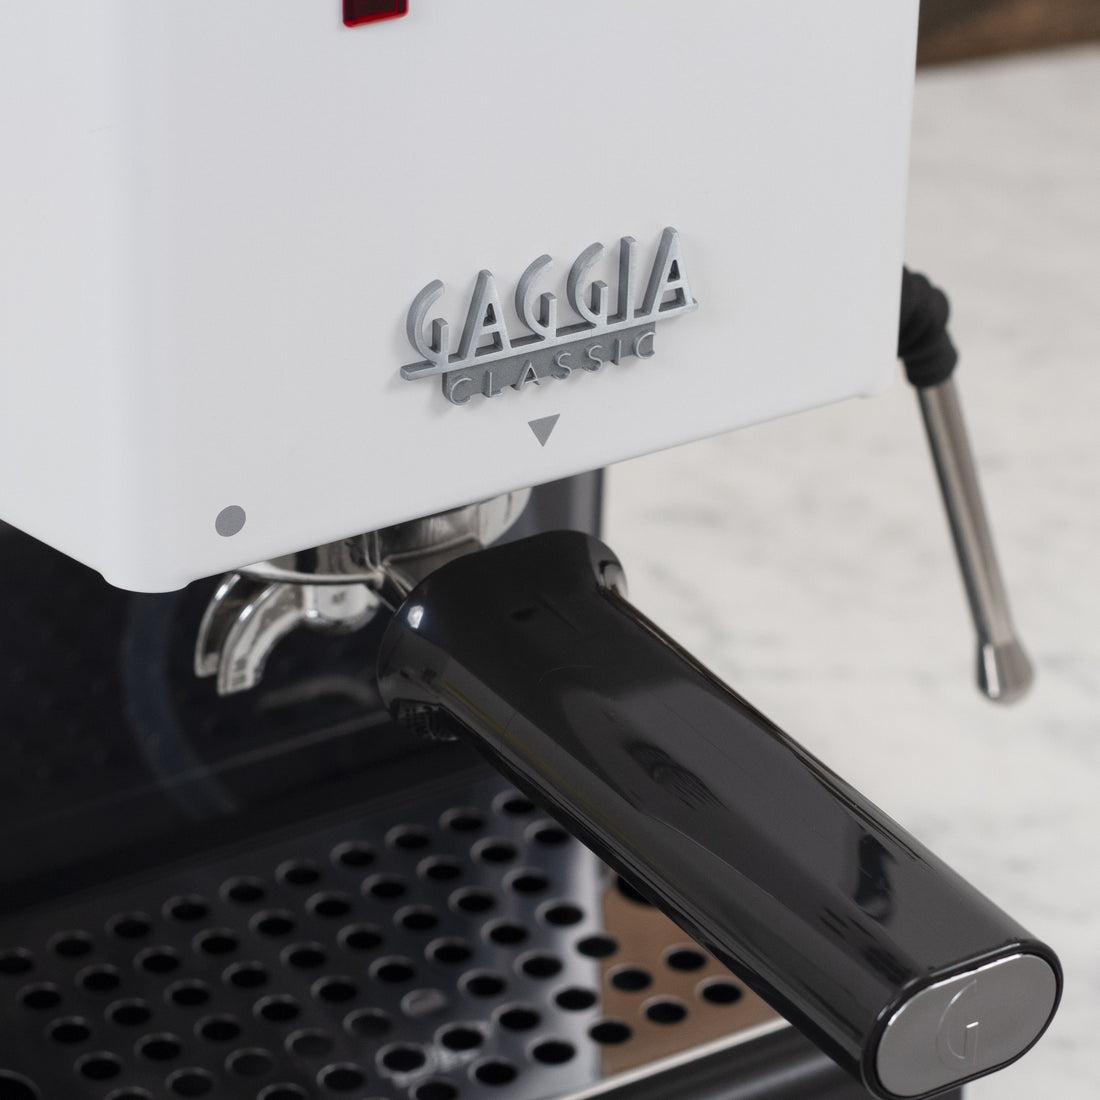 Gaggia Classic Evo Pro Espresso Machine in Polar White with Walnut